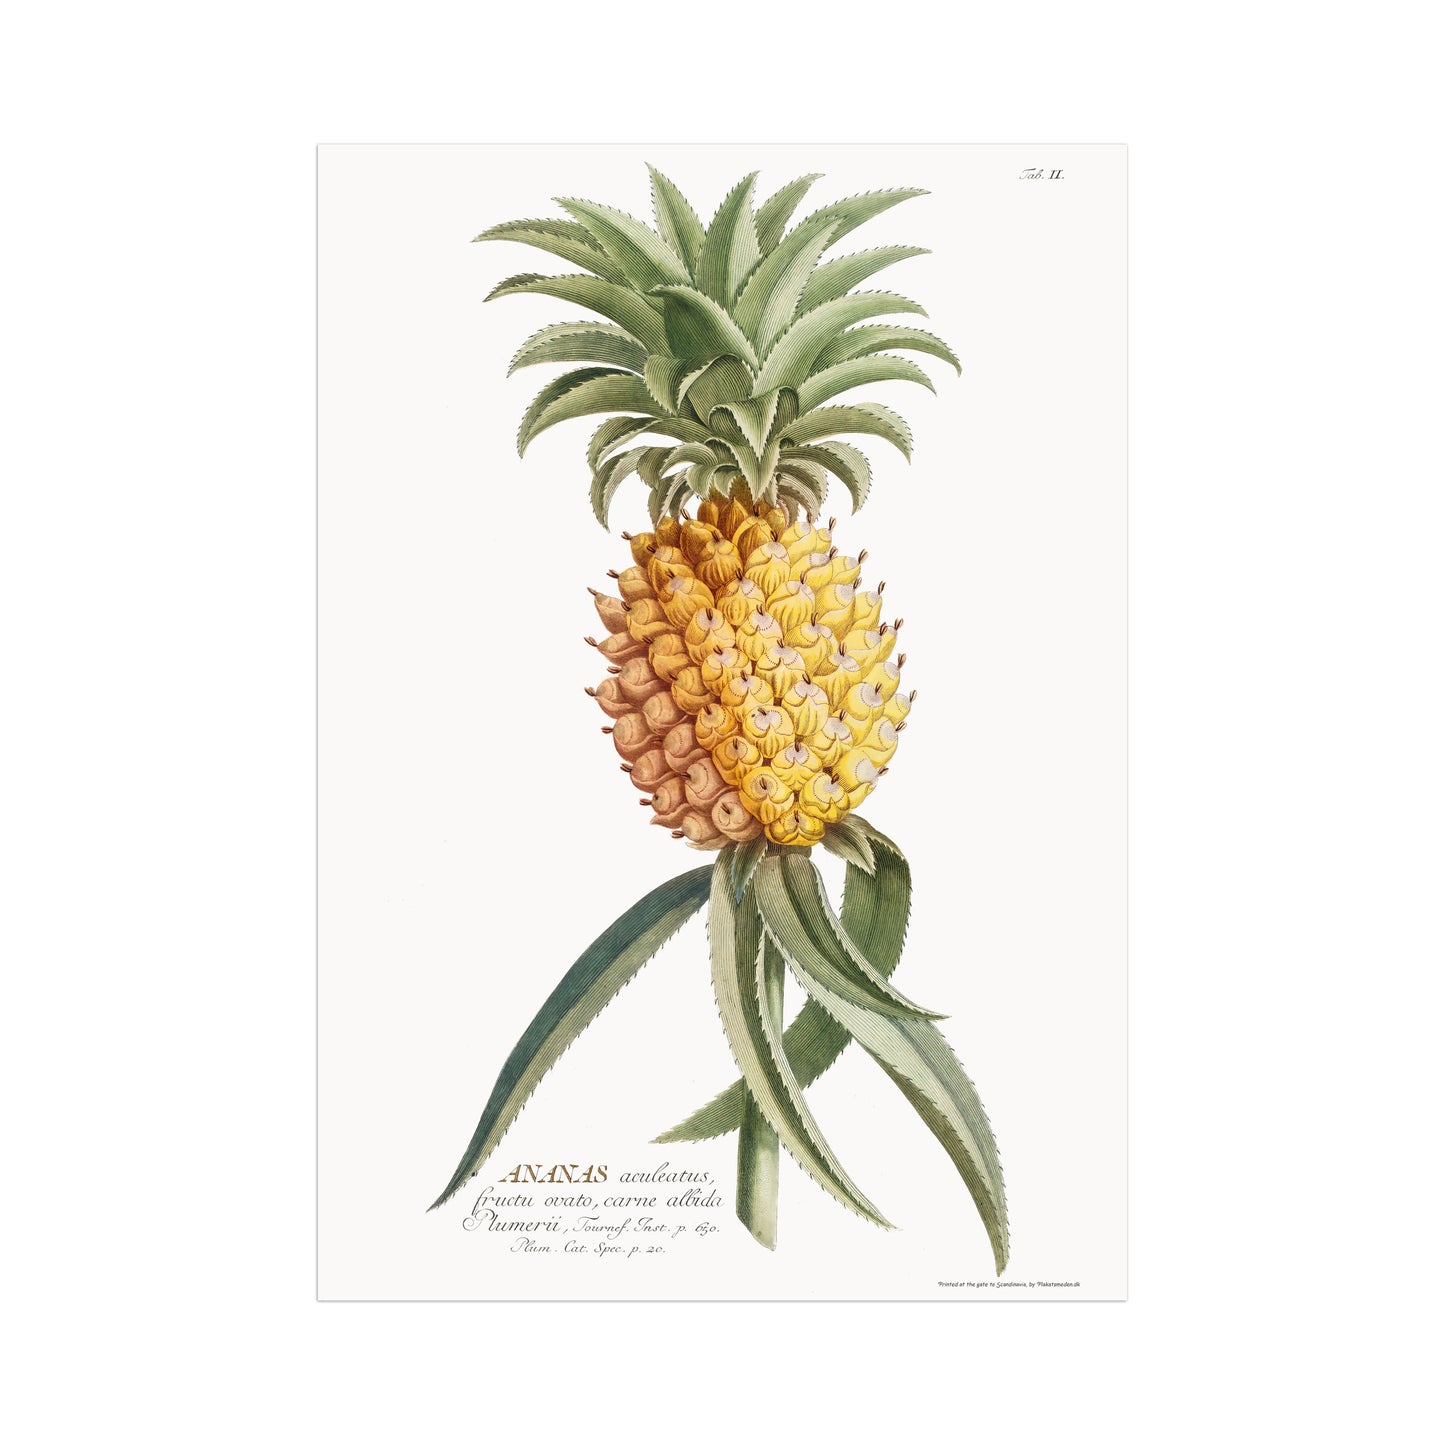 Ananas comosus (Ananas aculeatus)